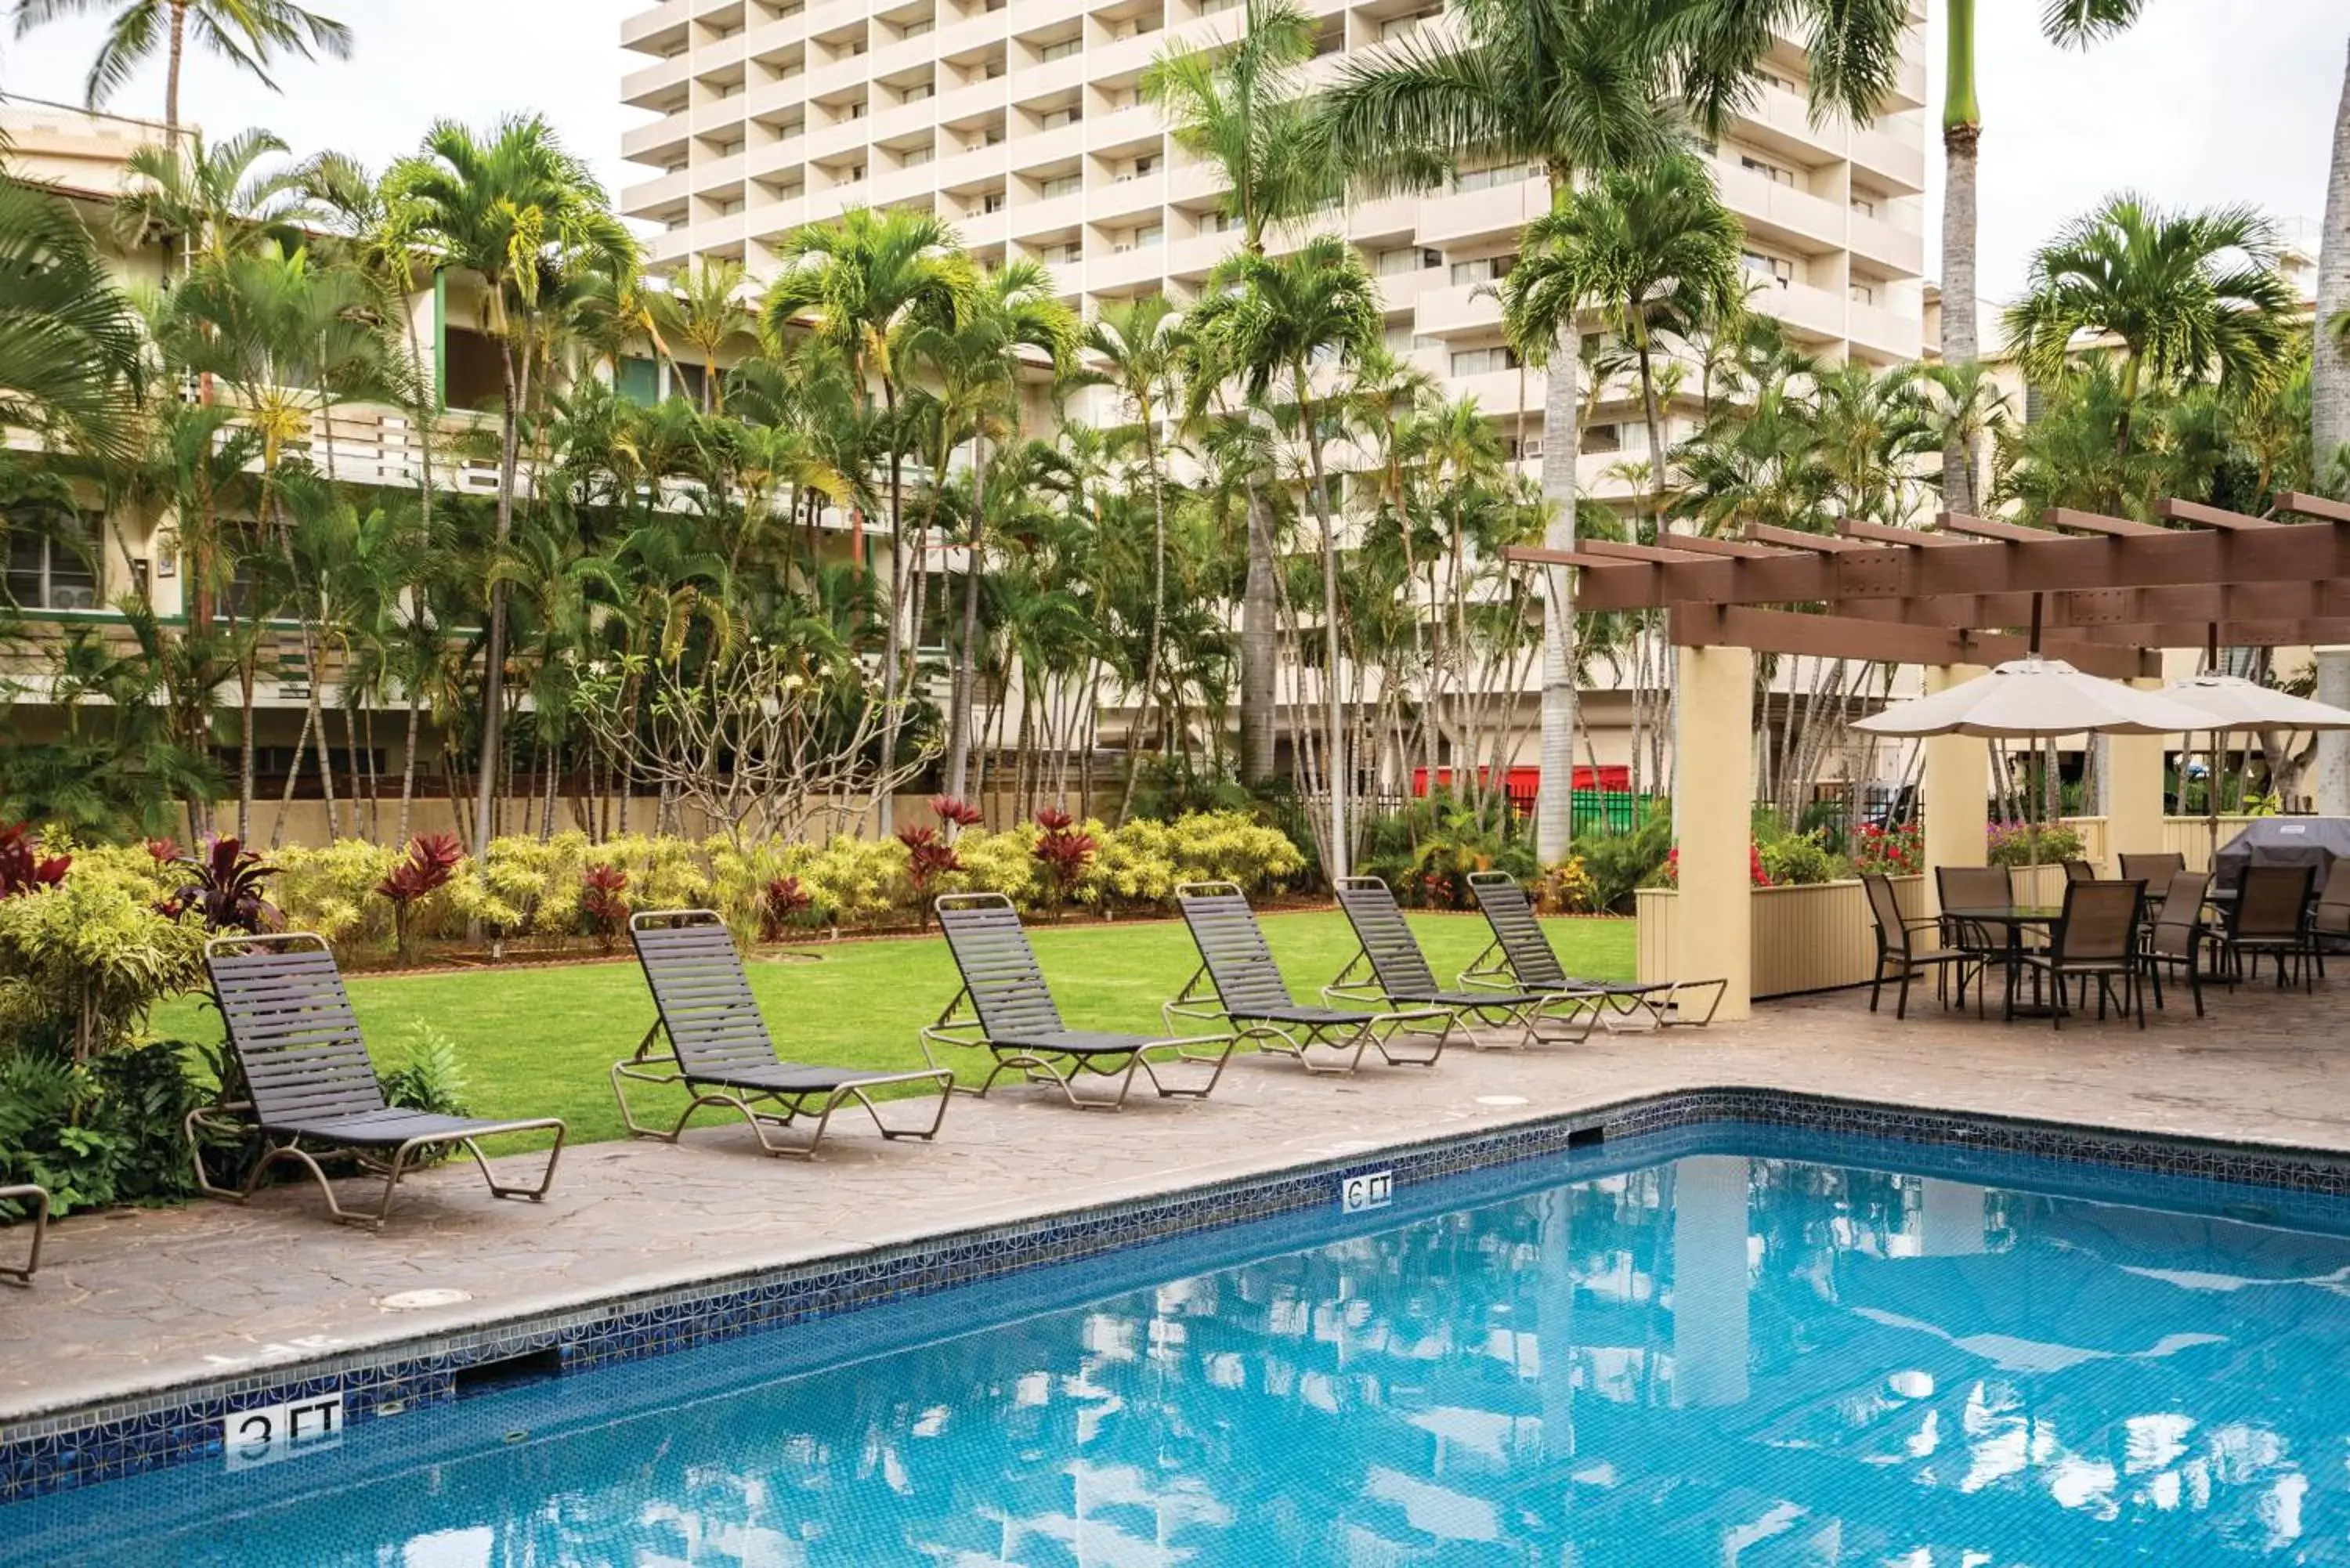 Swimming pool in Wyndham Vacation Resorts Royal Garden at Waikiki